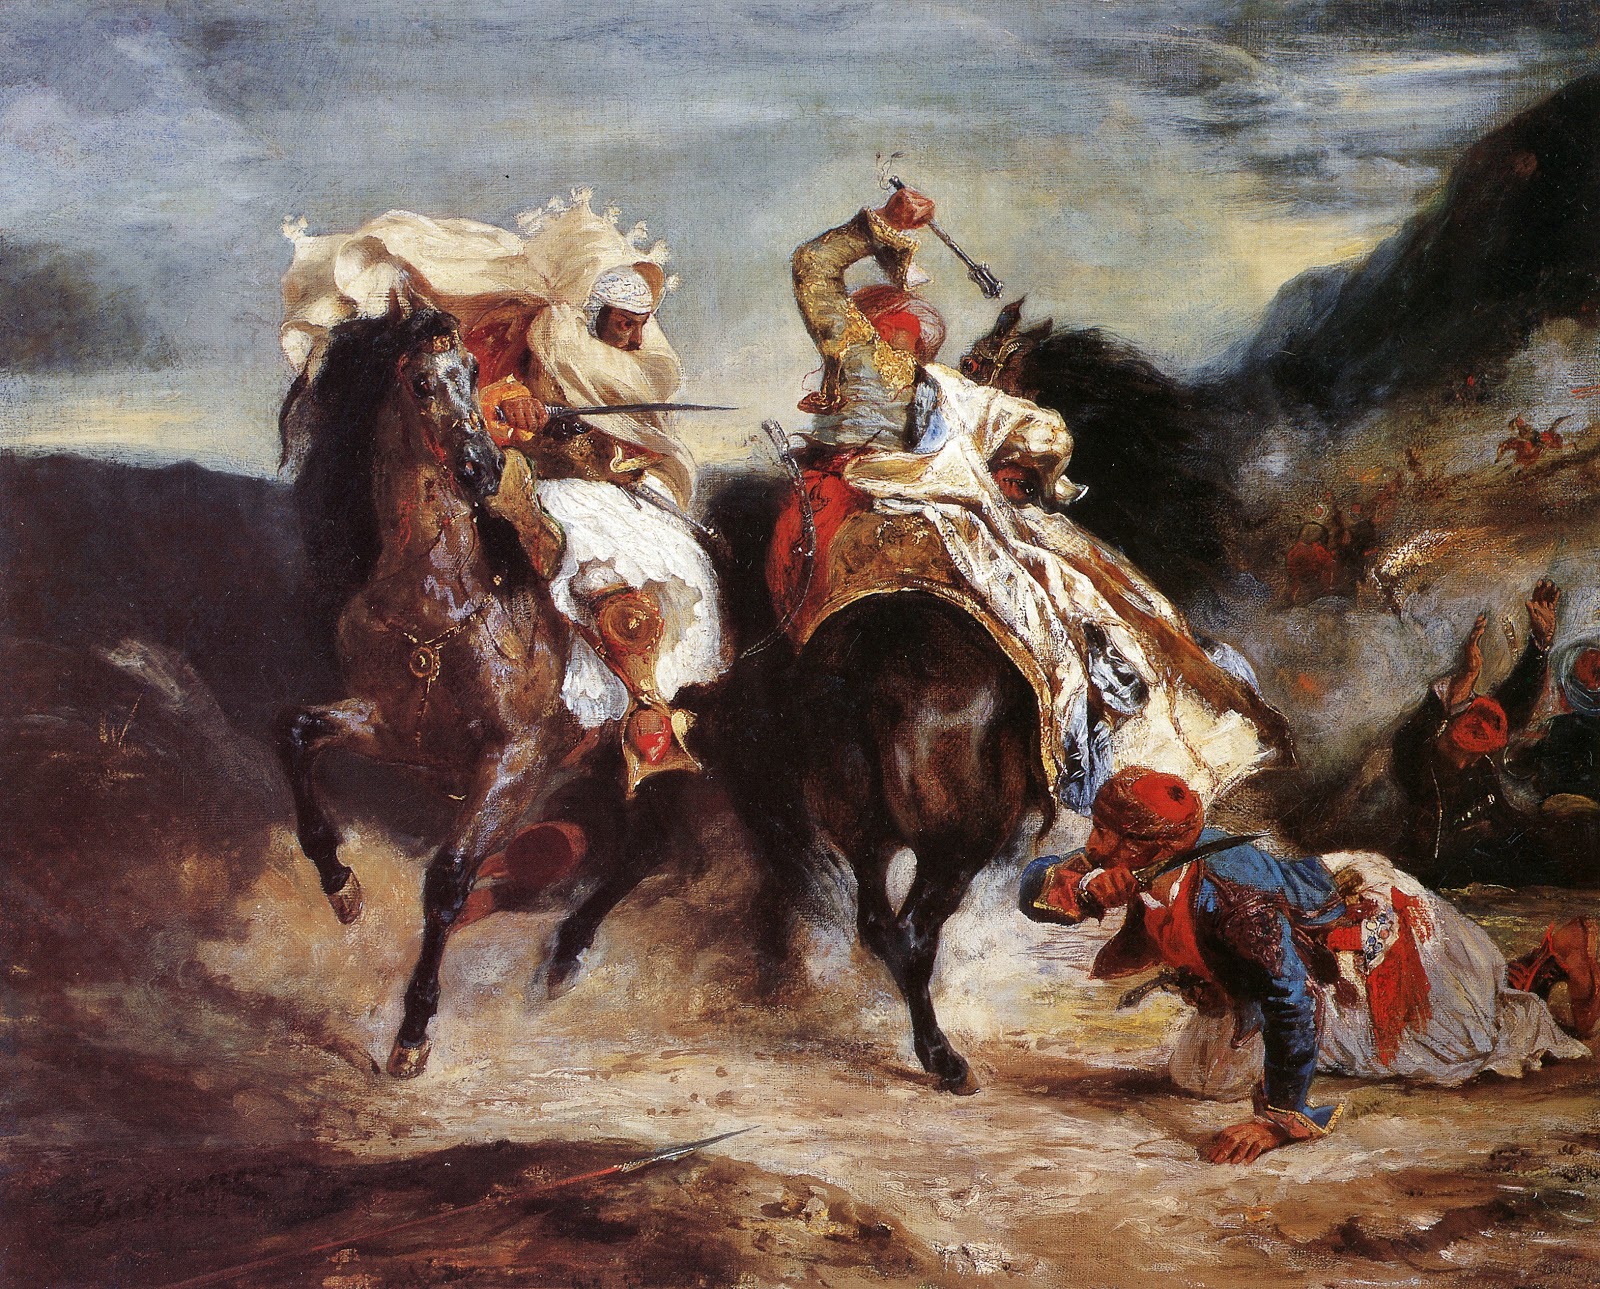 Eugene+Delacroix-1798-1863 (211).jpg